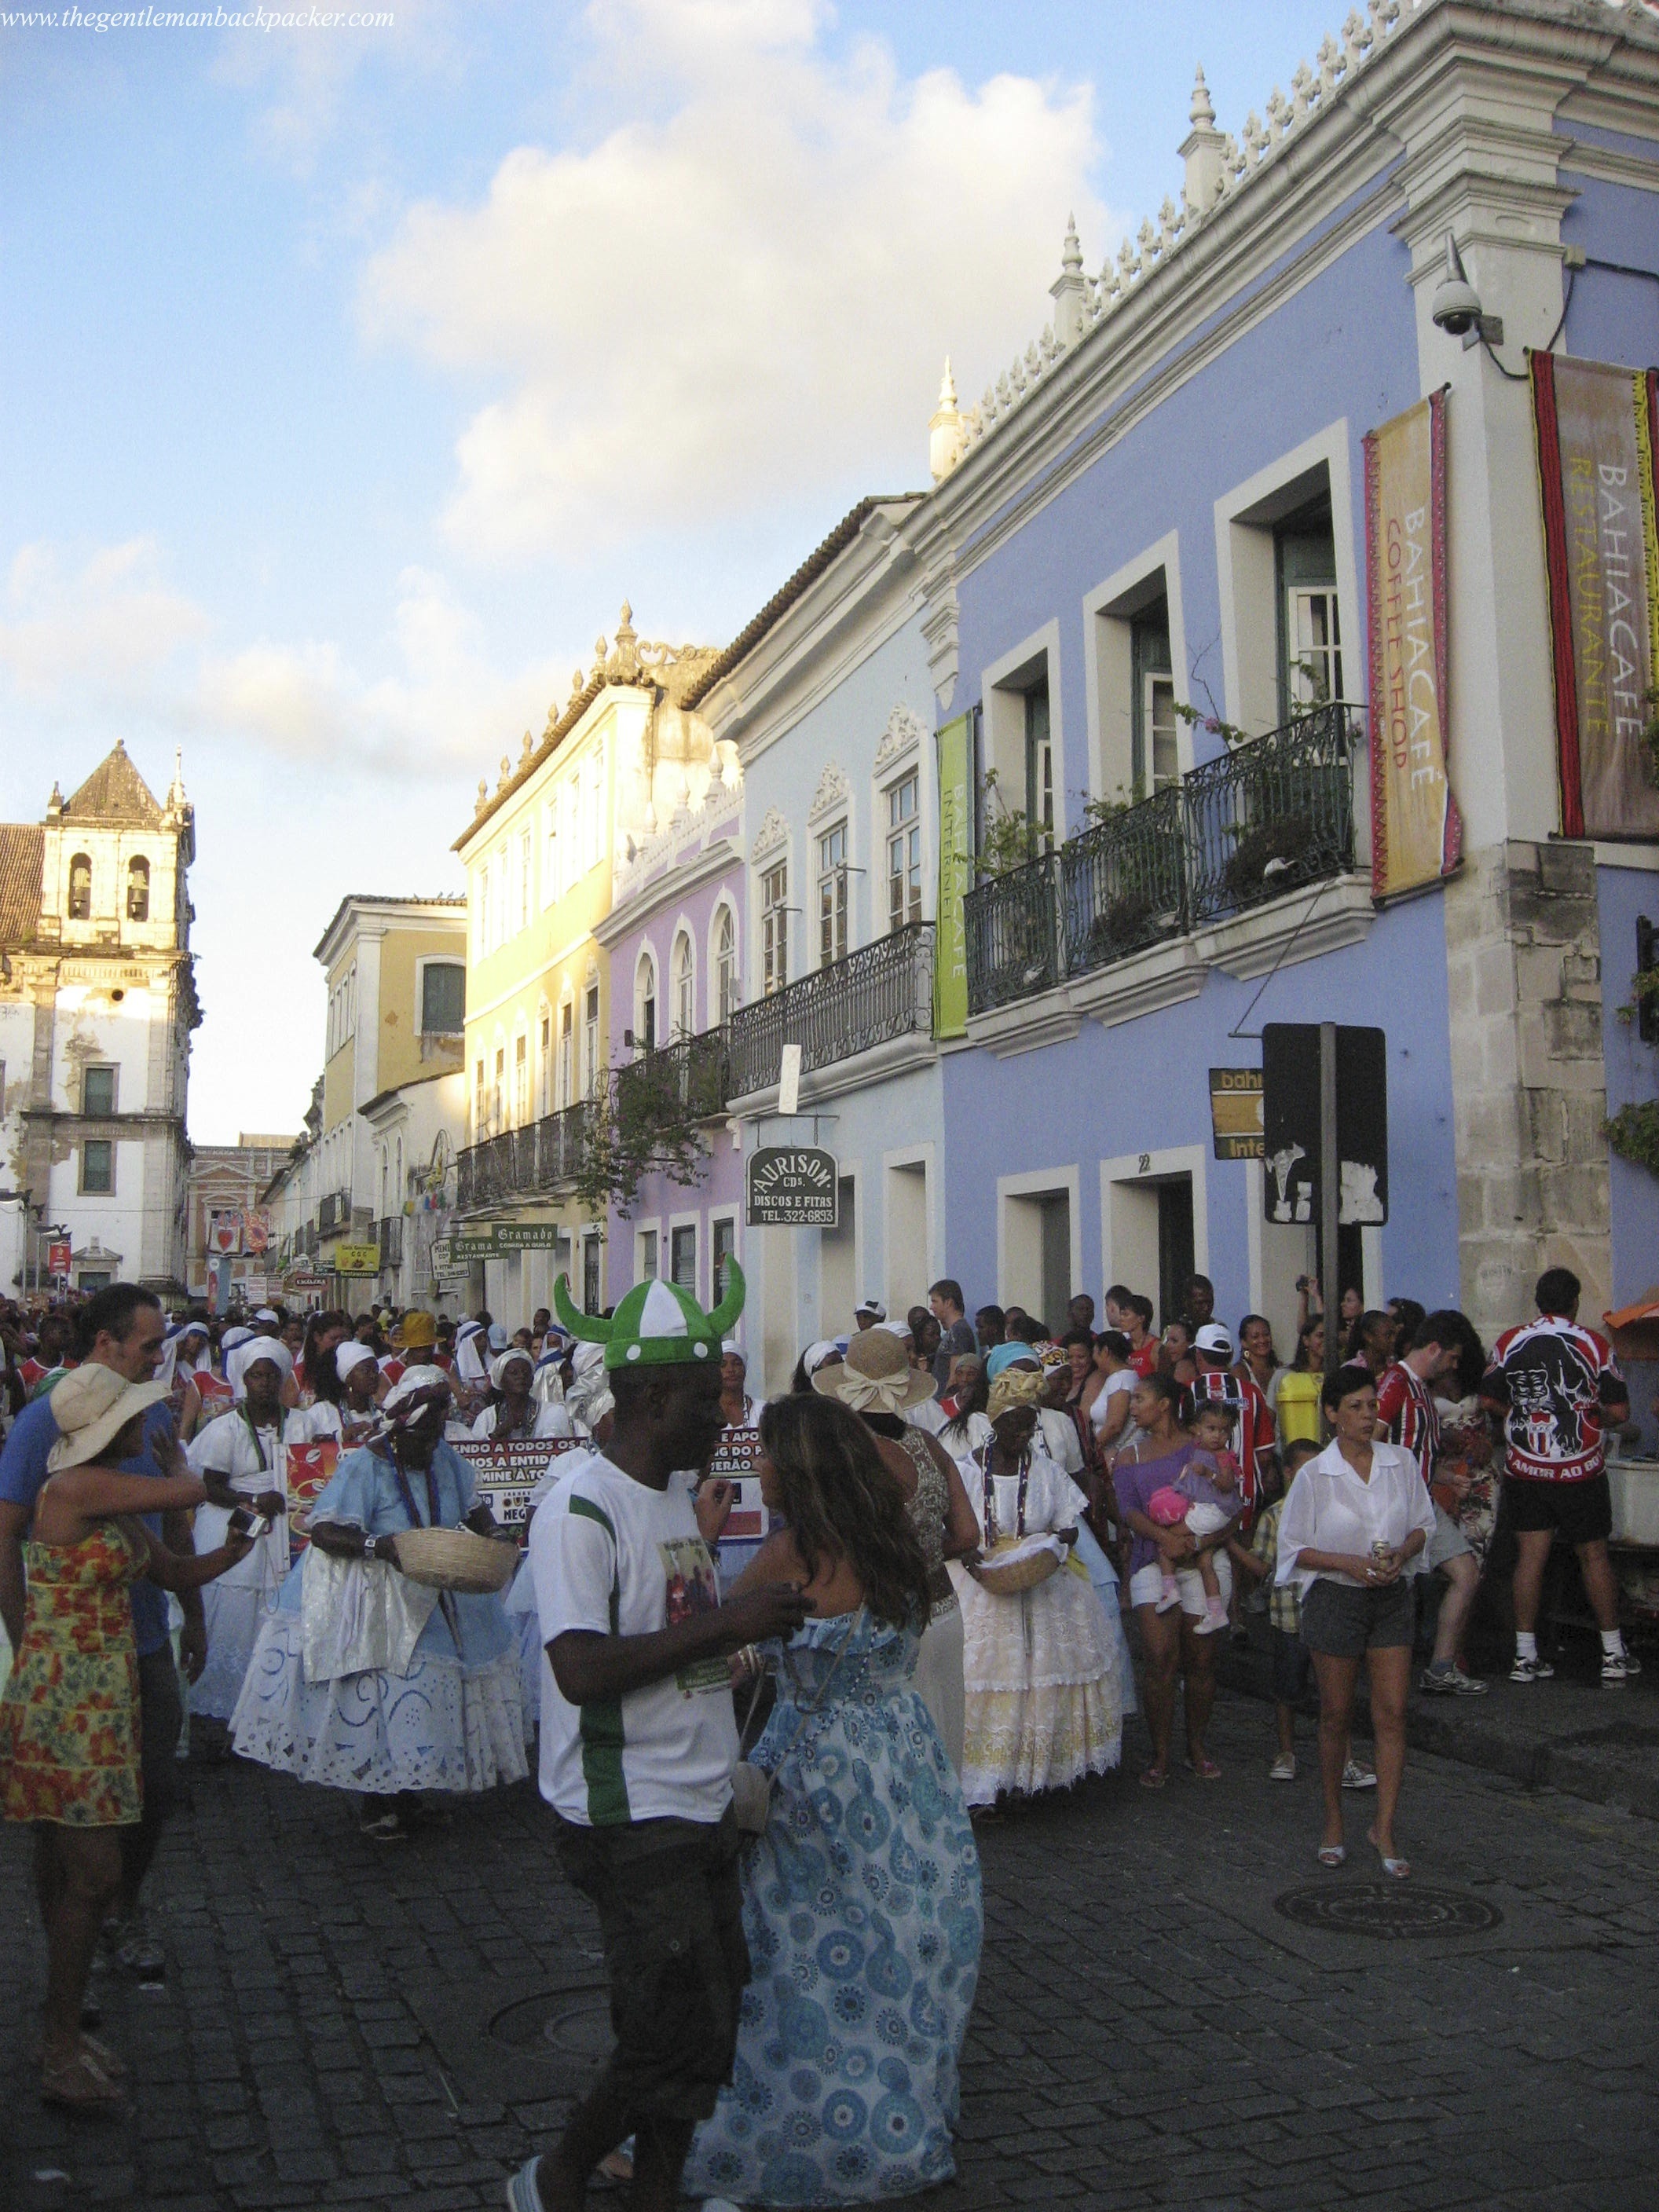 Salvador: Brazil's "Real" Carnival